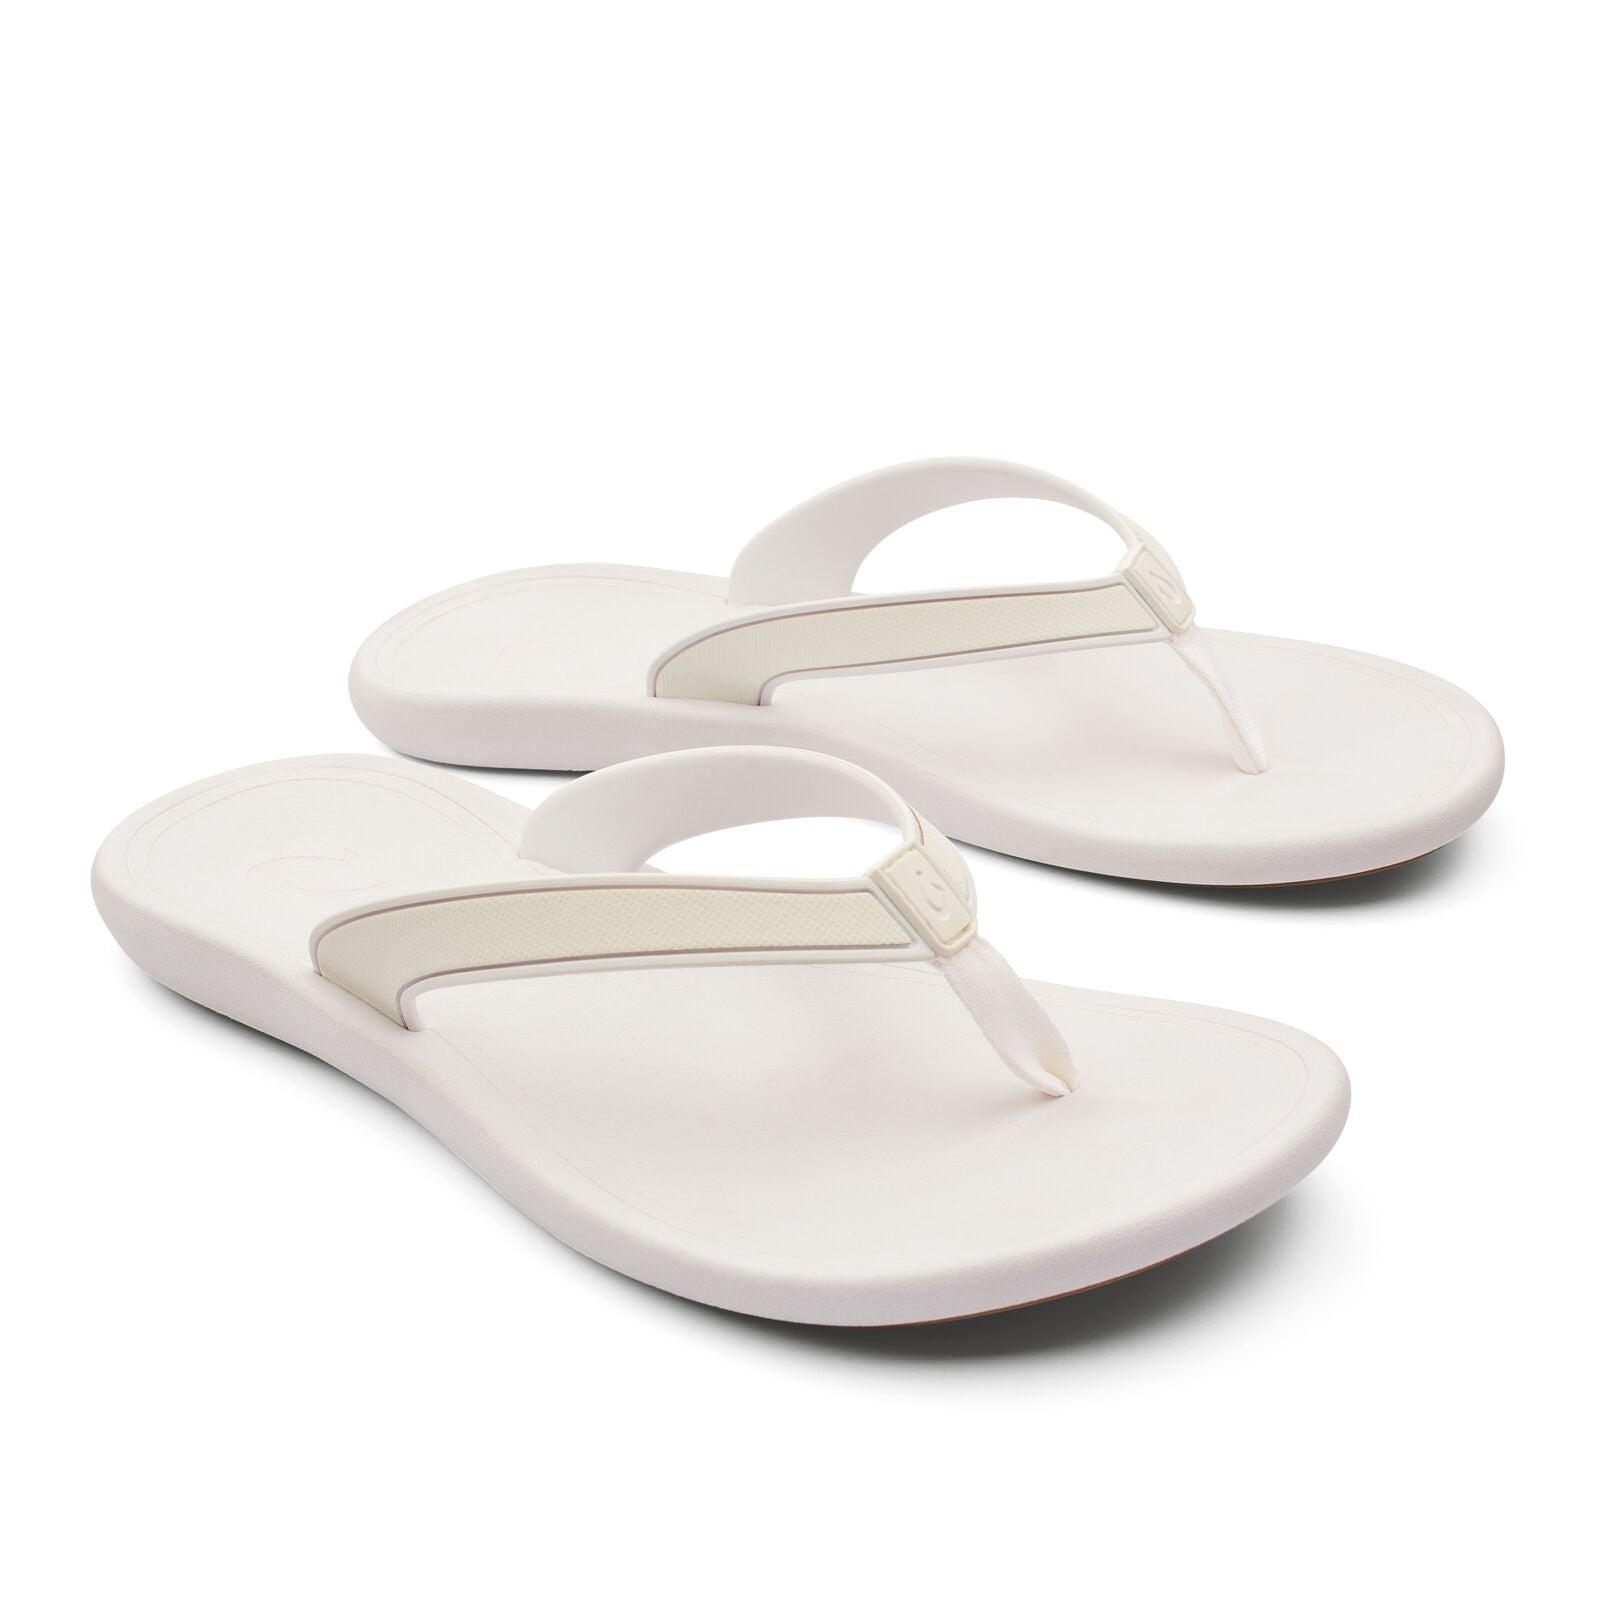 Olukai Kapehe Womens Sandal 4R4R-White-White 11